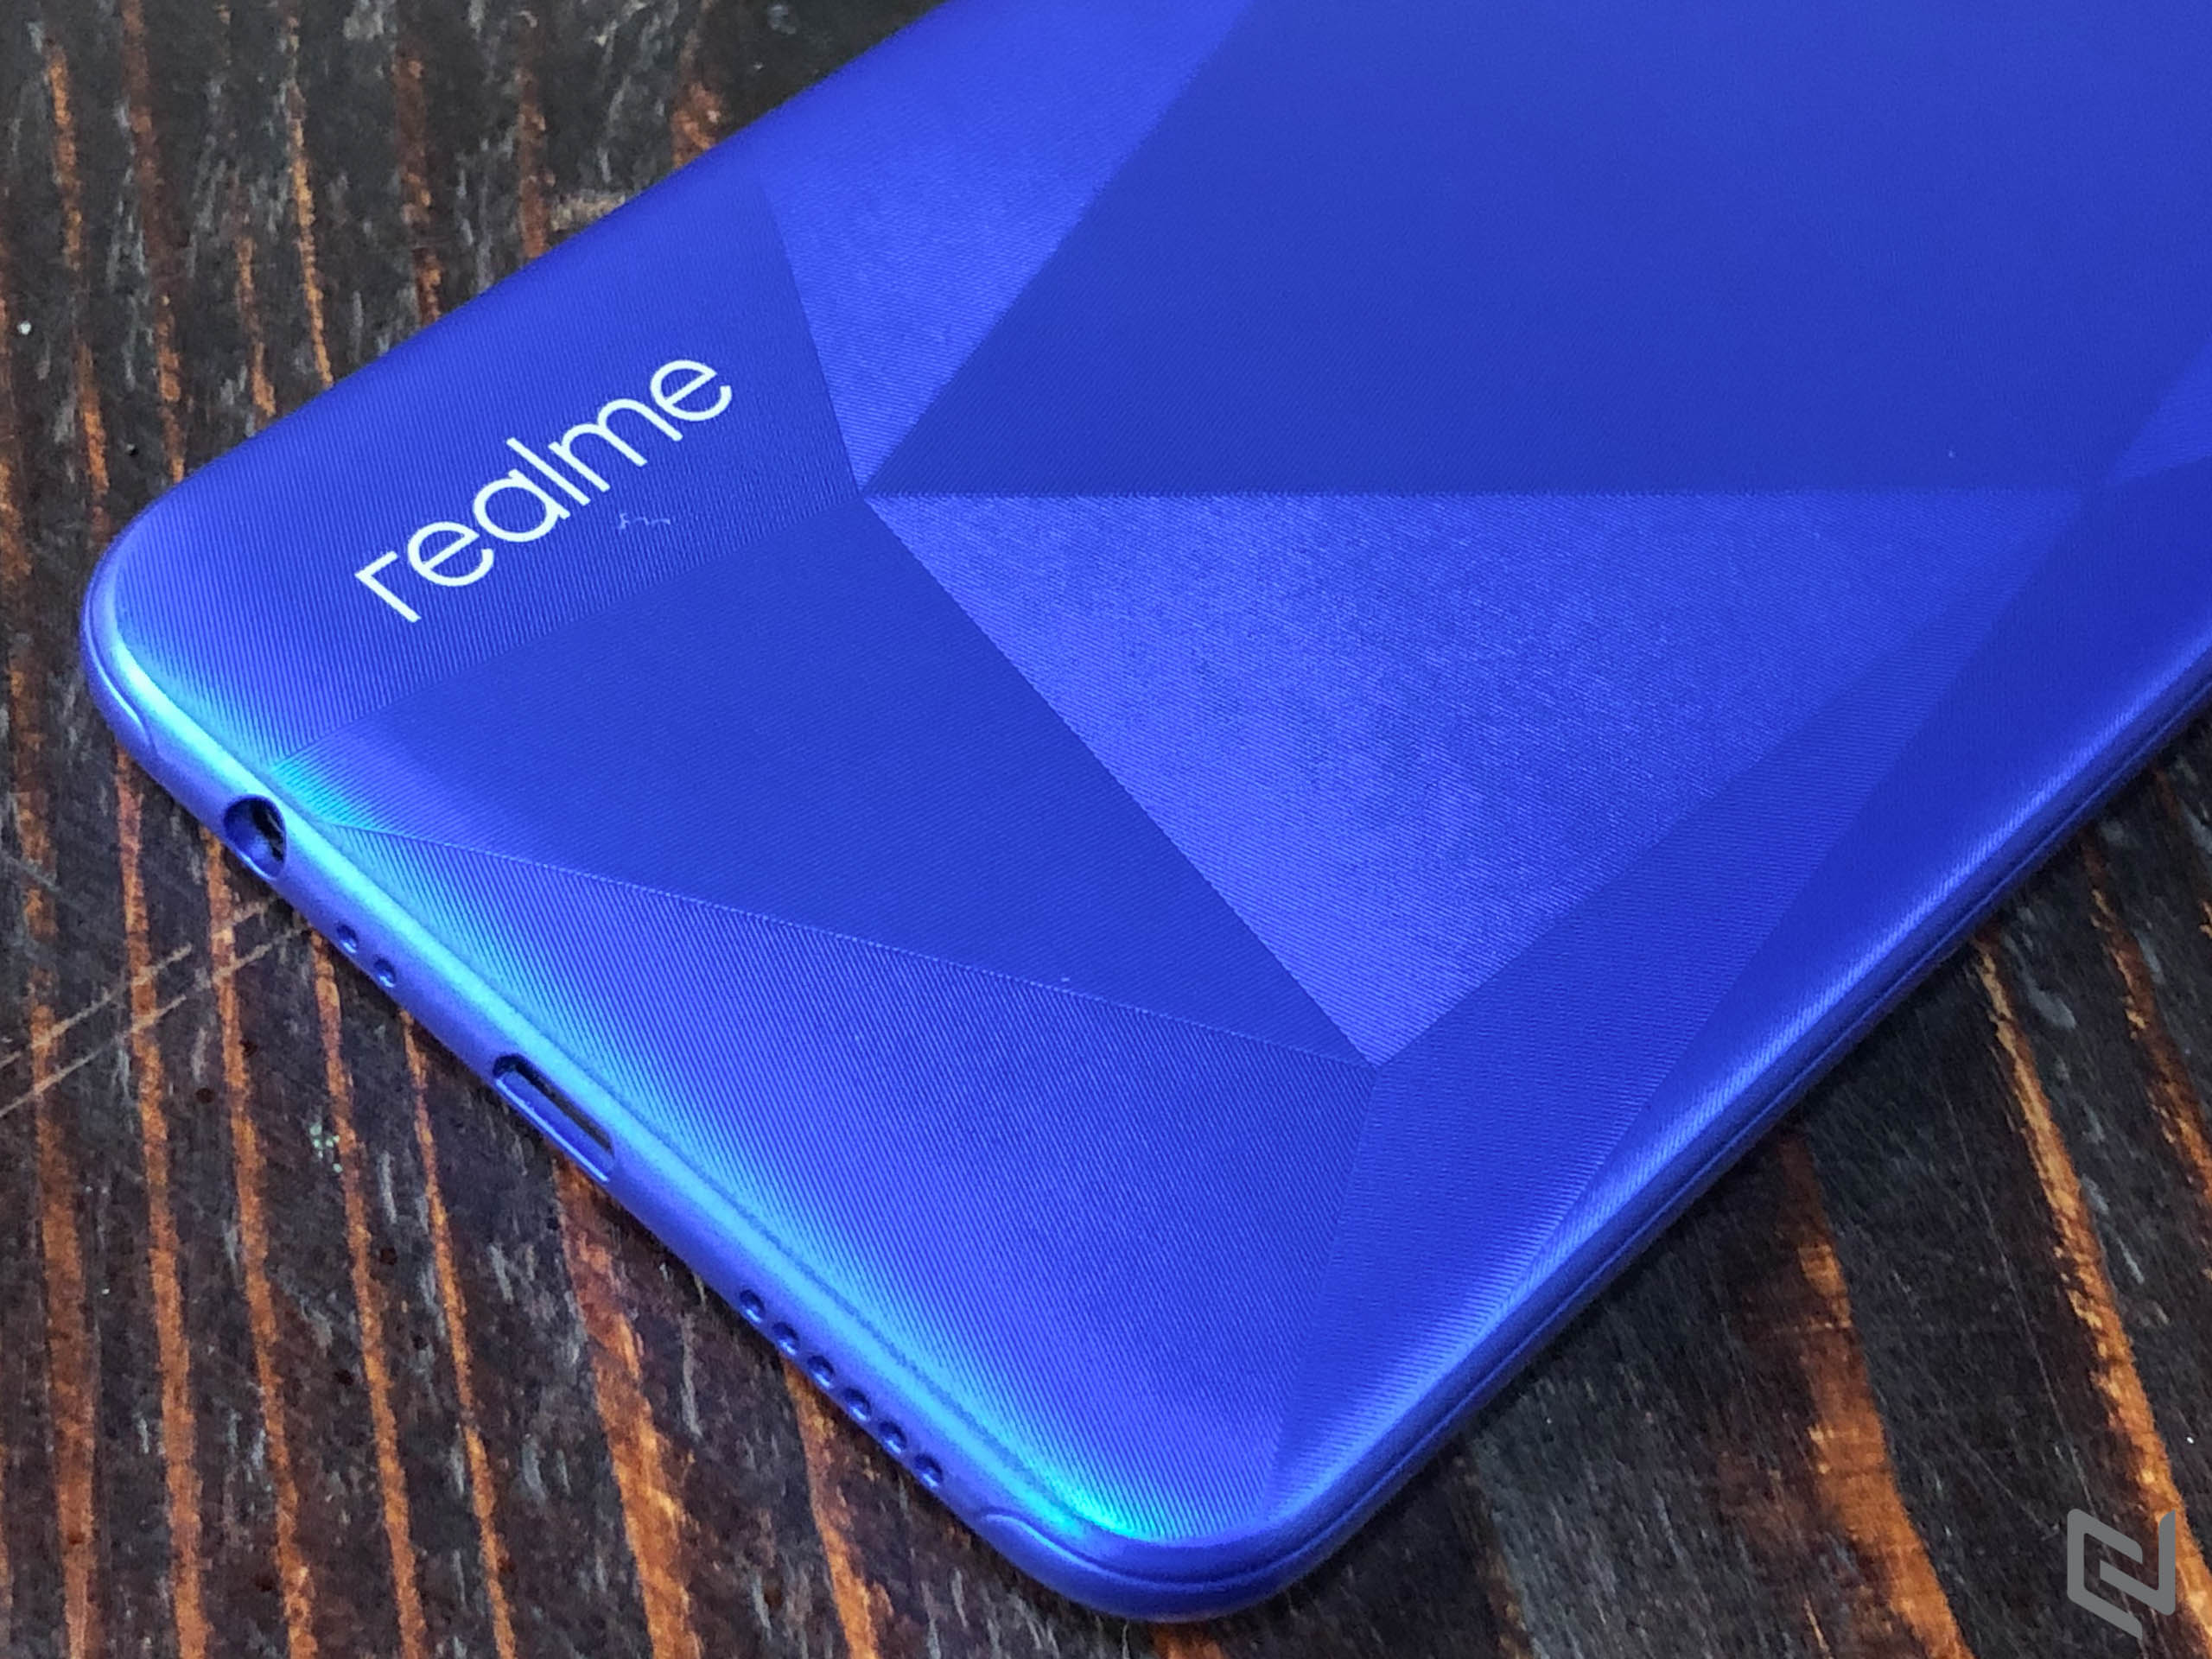 Realme có thể sẽ tung ra smartphone 5G trong năm 2019